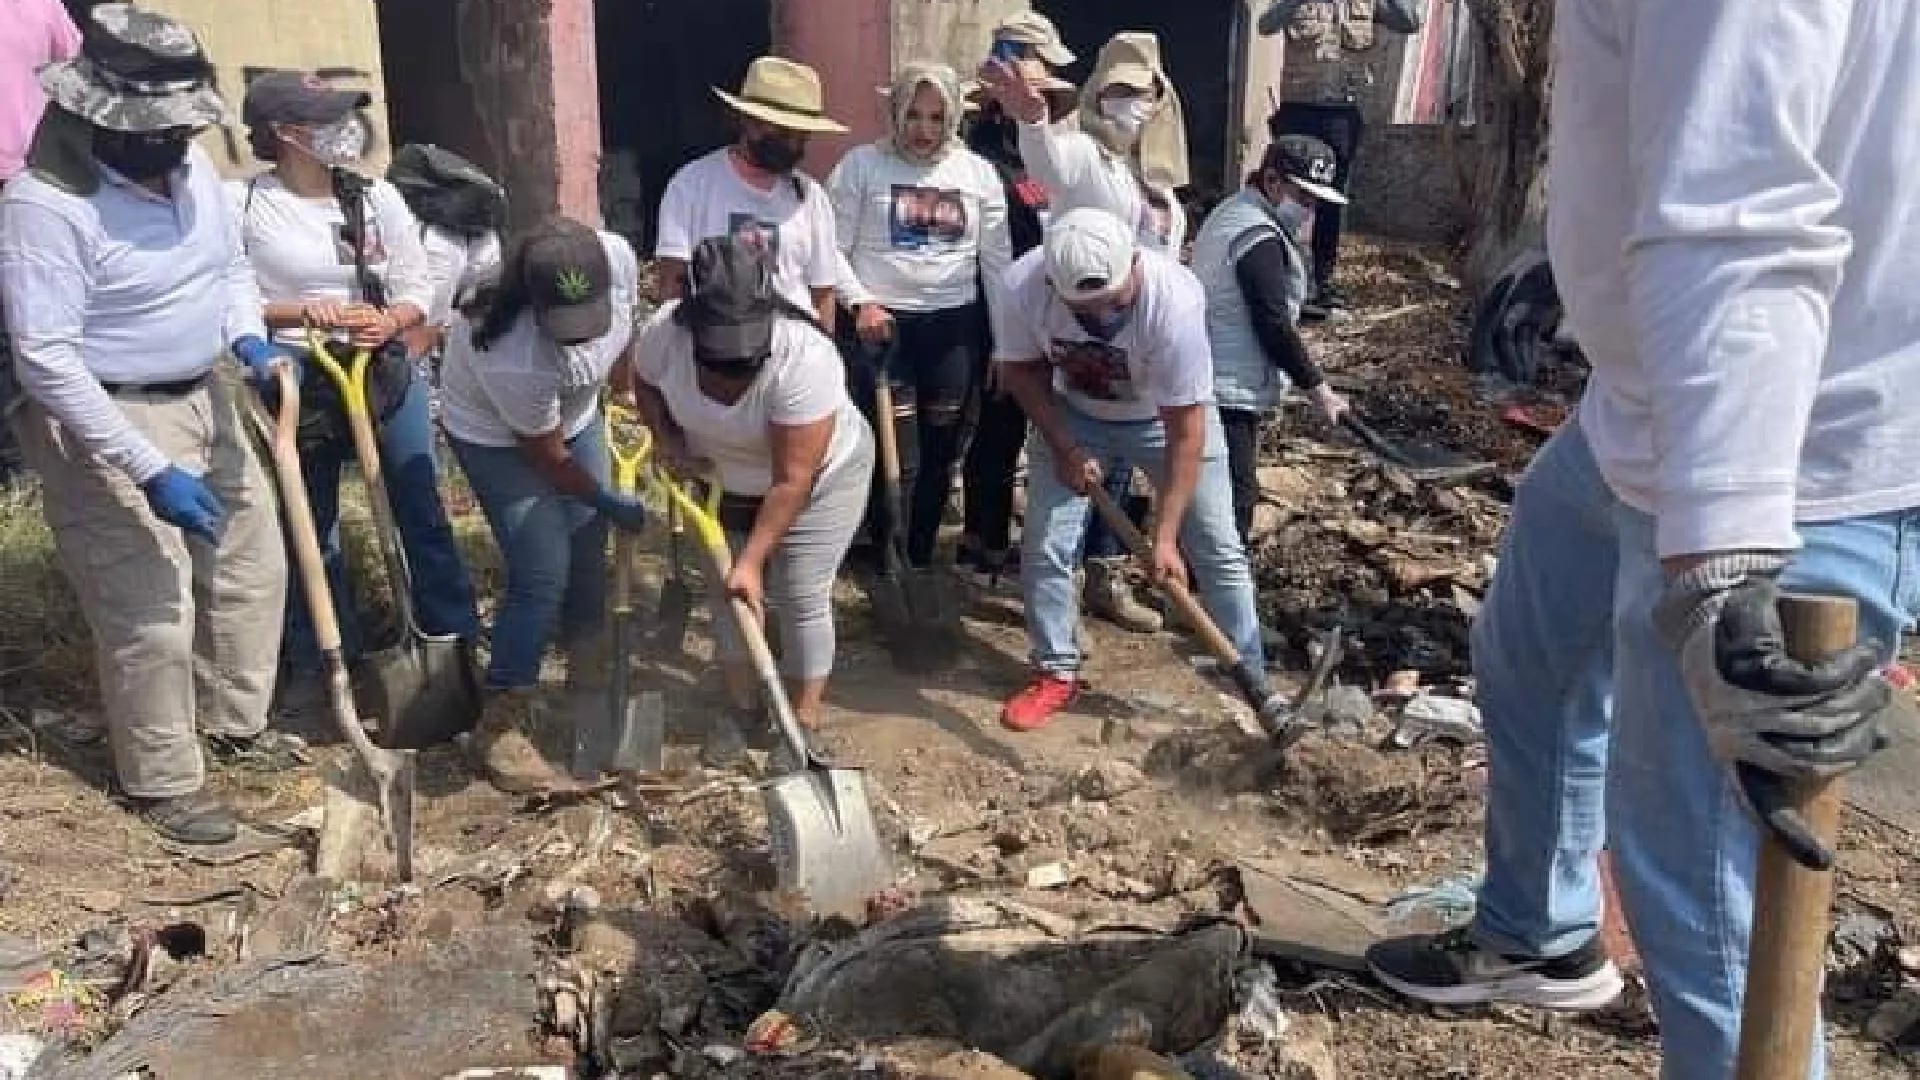 El Colectivo Madres Buscadoras de Jalisco reclamó que se les bloqueara la posibilidad de participar en la exhumación de cuerpos. FB/Madres Buscadoras Jalisco